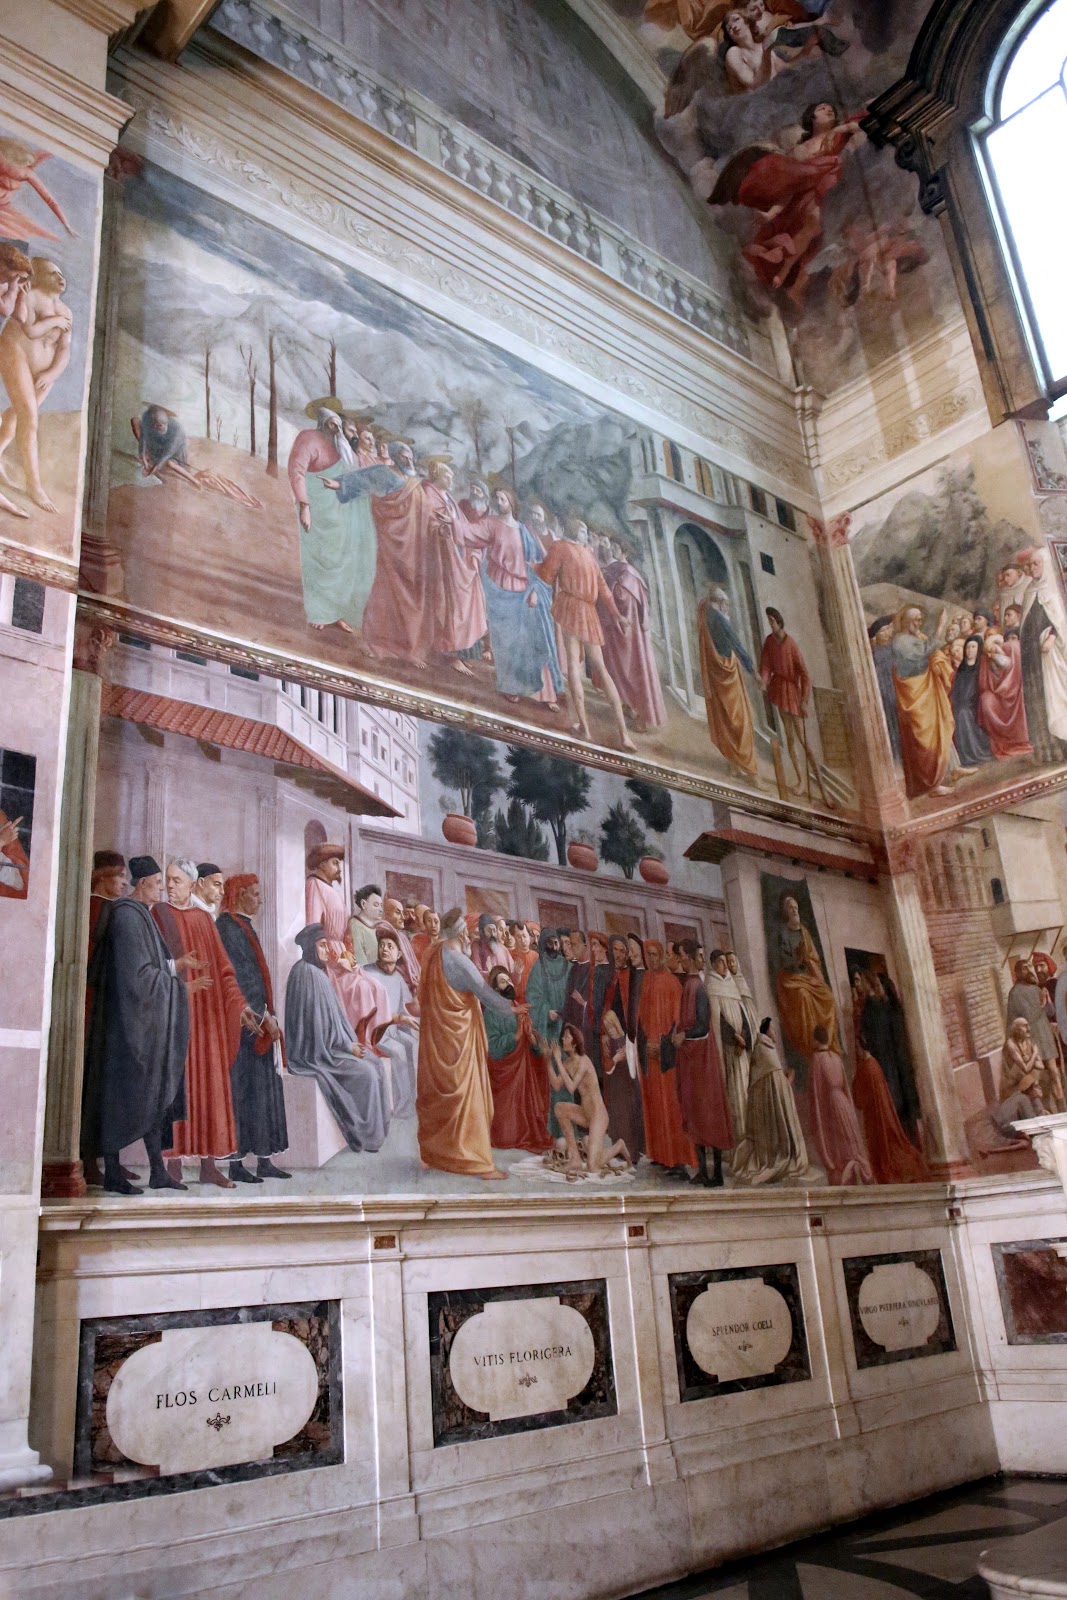 Filippino+Lippi-1457-1504 (18).jpg